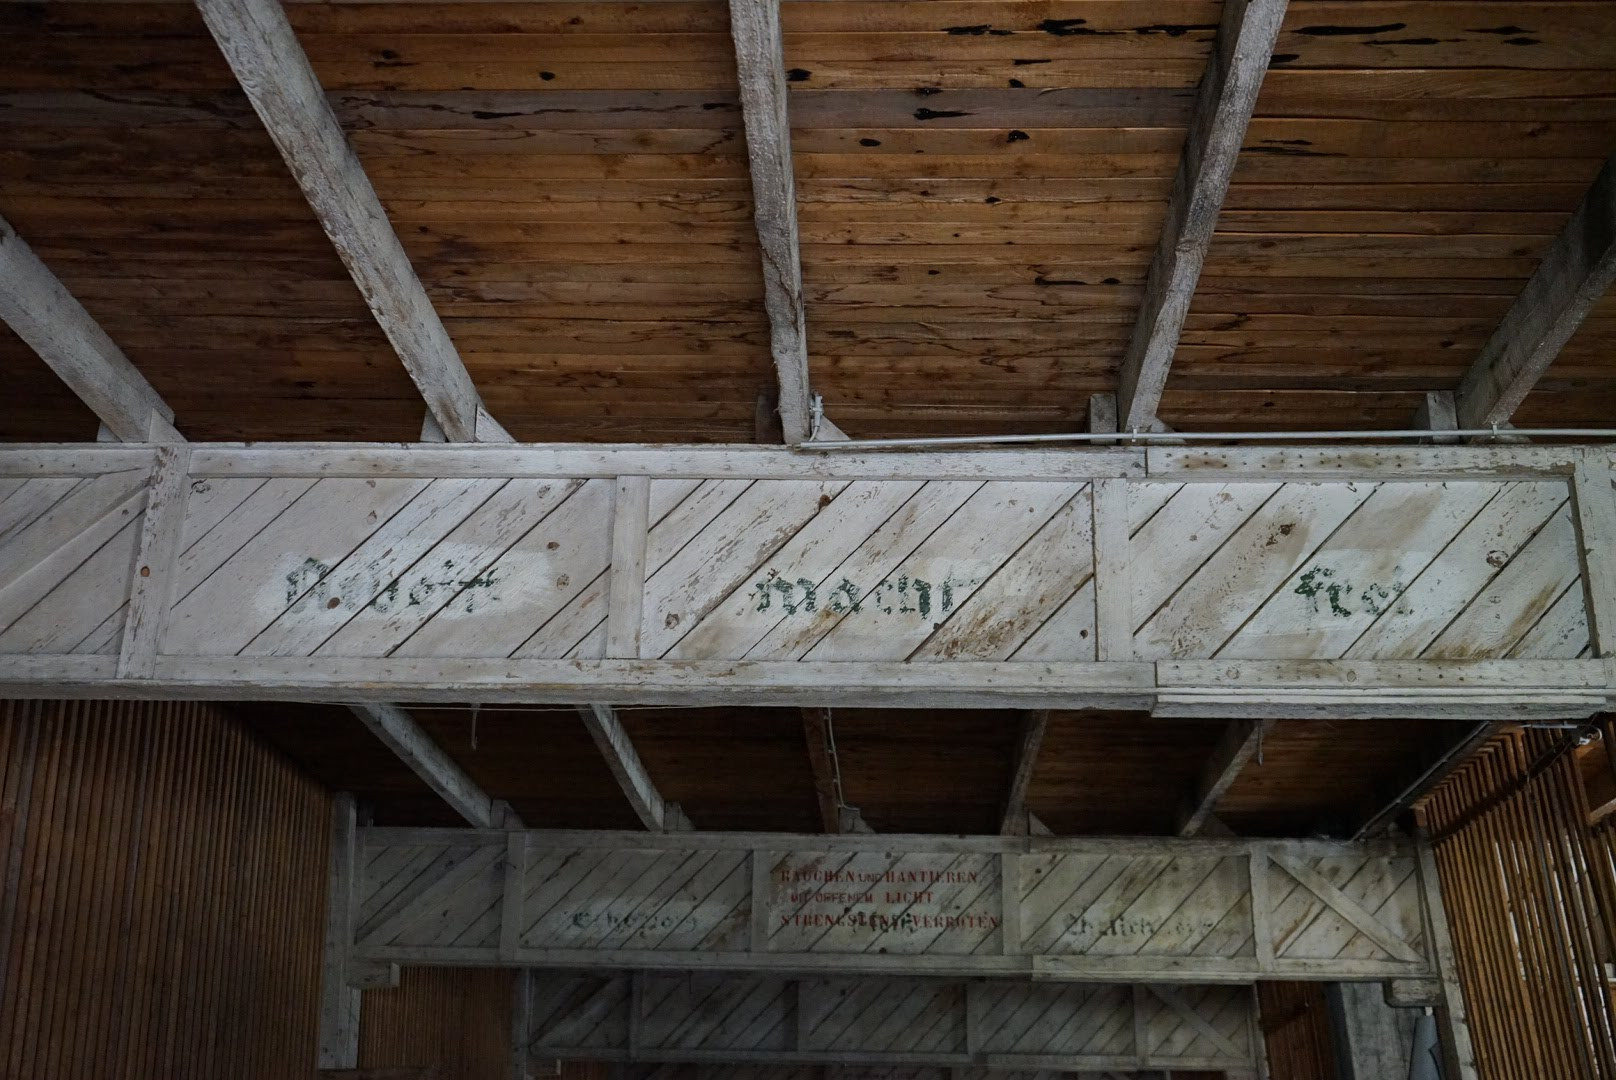 Zynische Inschrift im ersten Stock des Objekts 10 am Gelände der Birago-Kaserne - "Arbeit macht frei"